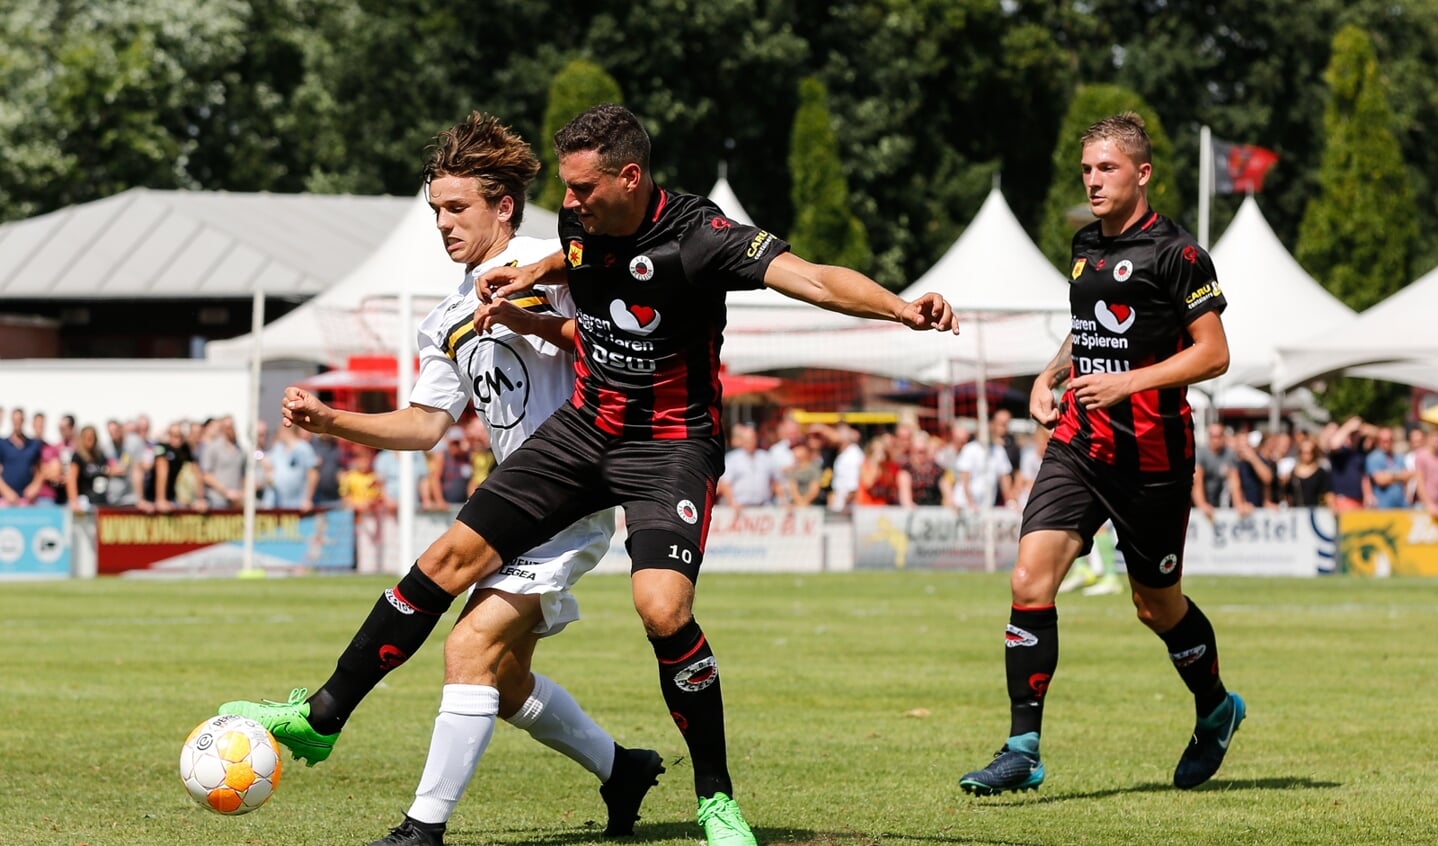 NAC speelde zaterdag 28 juli tegen Excelsior in Zundert. De Bredanaars speelden voor het eerst in een historisch getint wit uit-shirt.